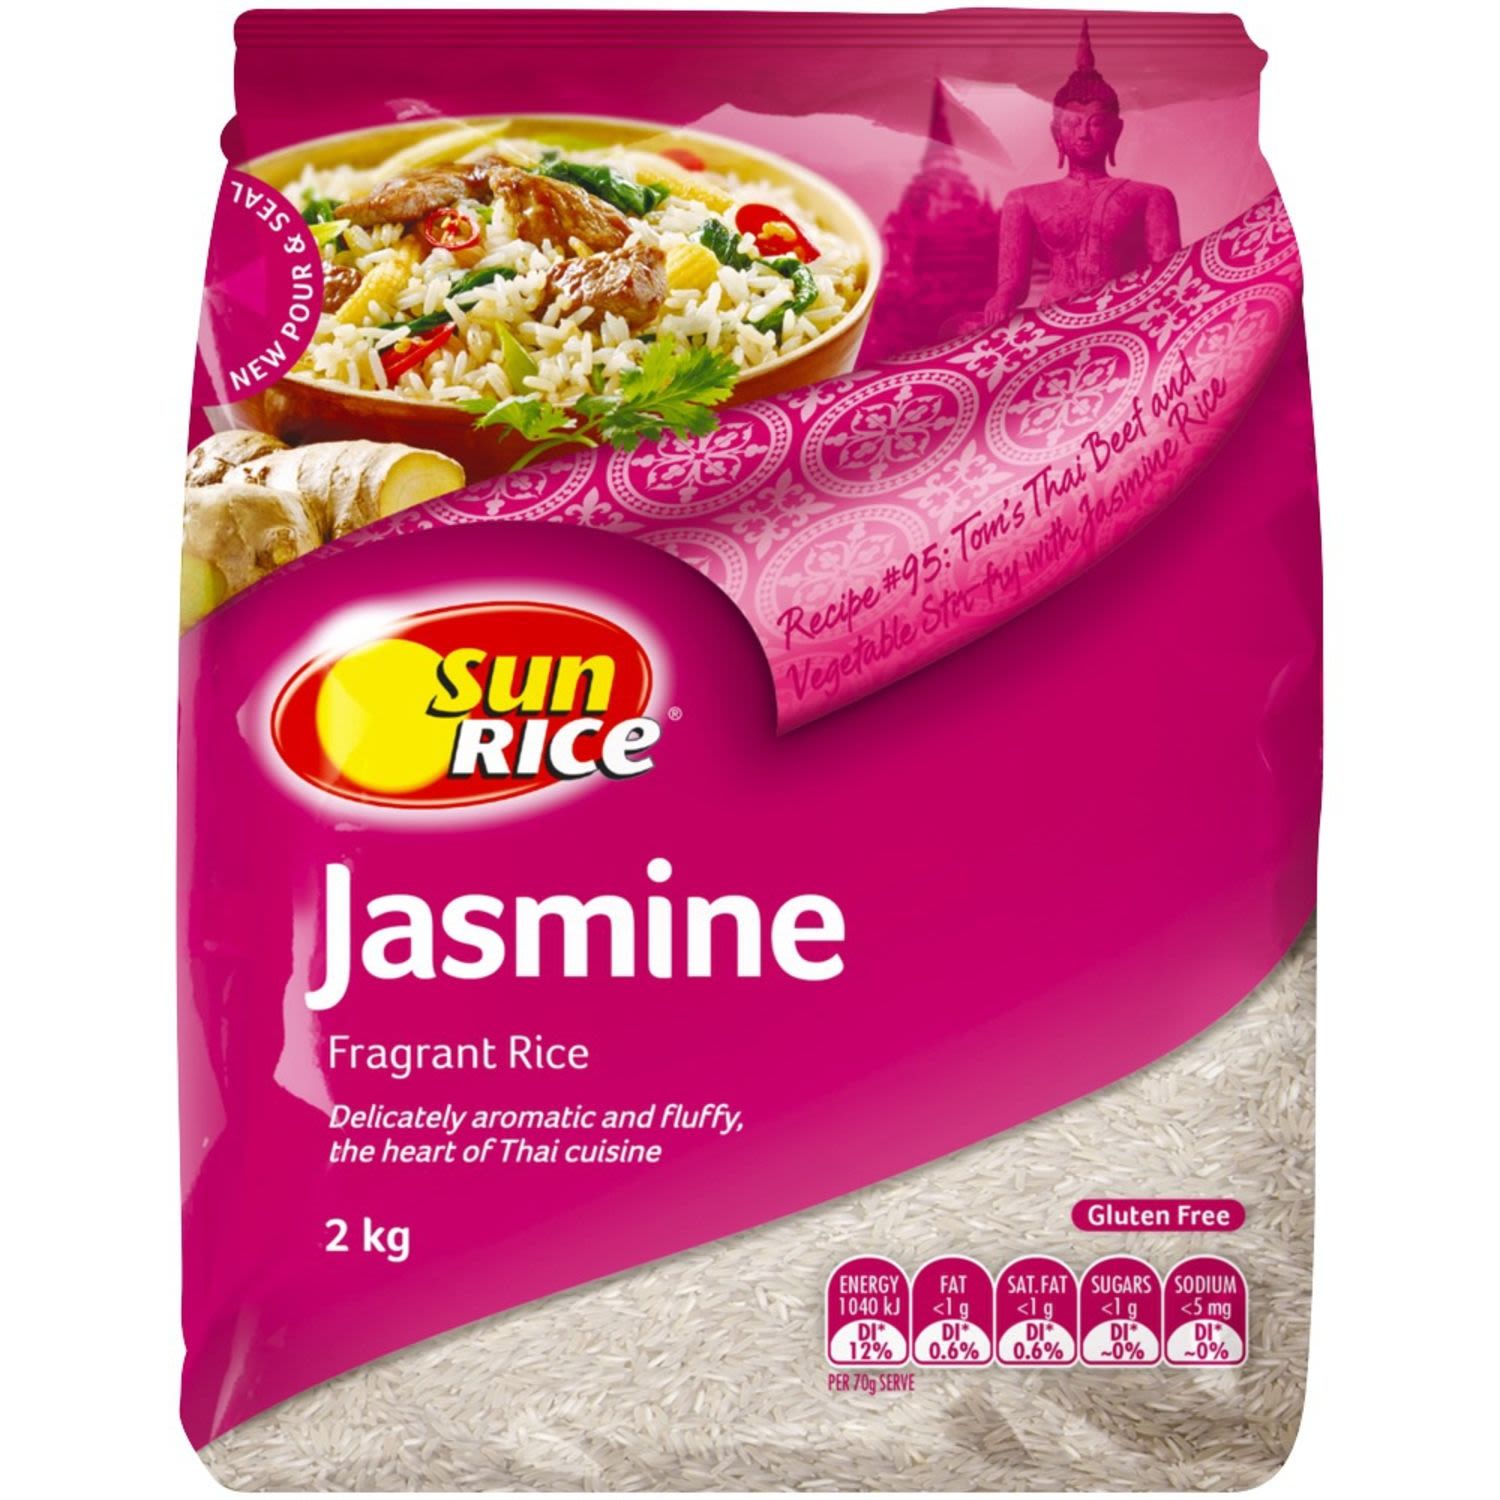 SunRice Jasmine Fragrant Rice, 2 Kilogram